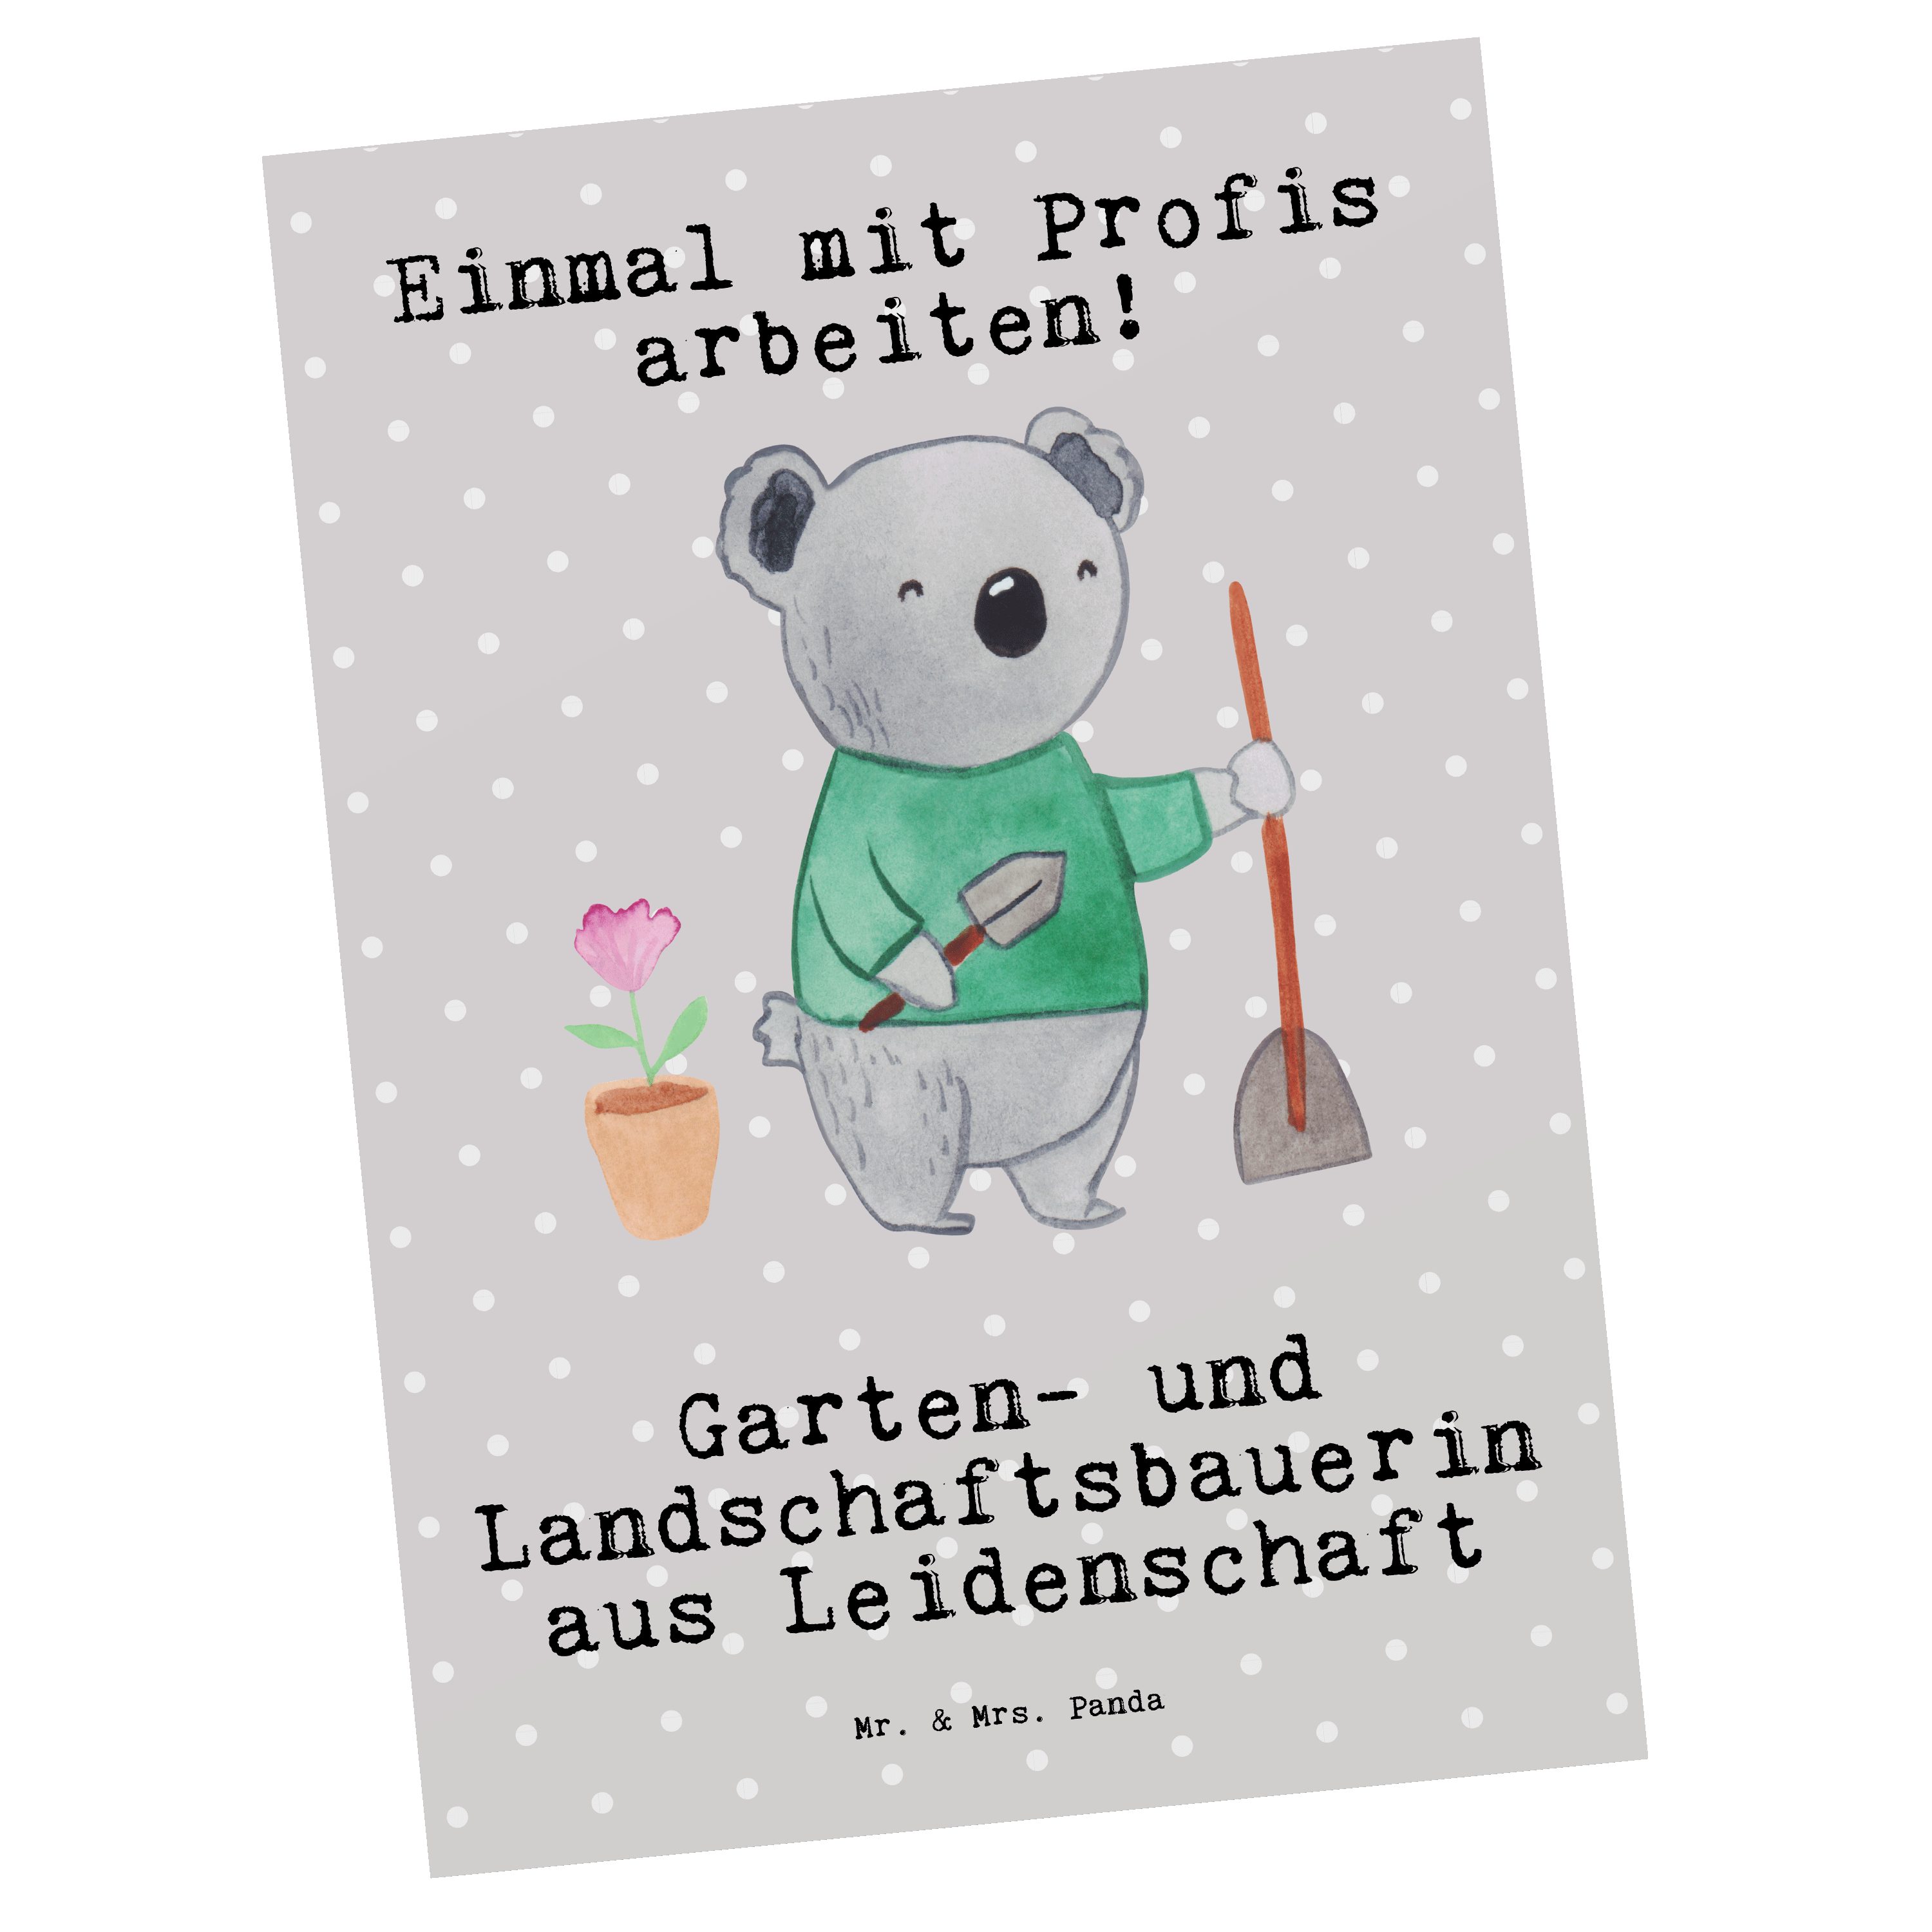 Mr. & Mrs. Panda Postkarte Garten- und Landschaftsbauerin aus Leidenschaft - Grau Pastell - Gesc | Grußkarten